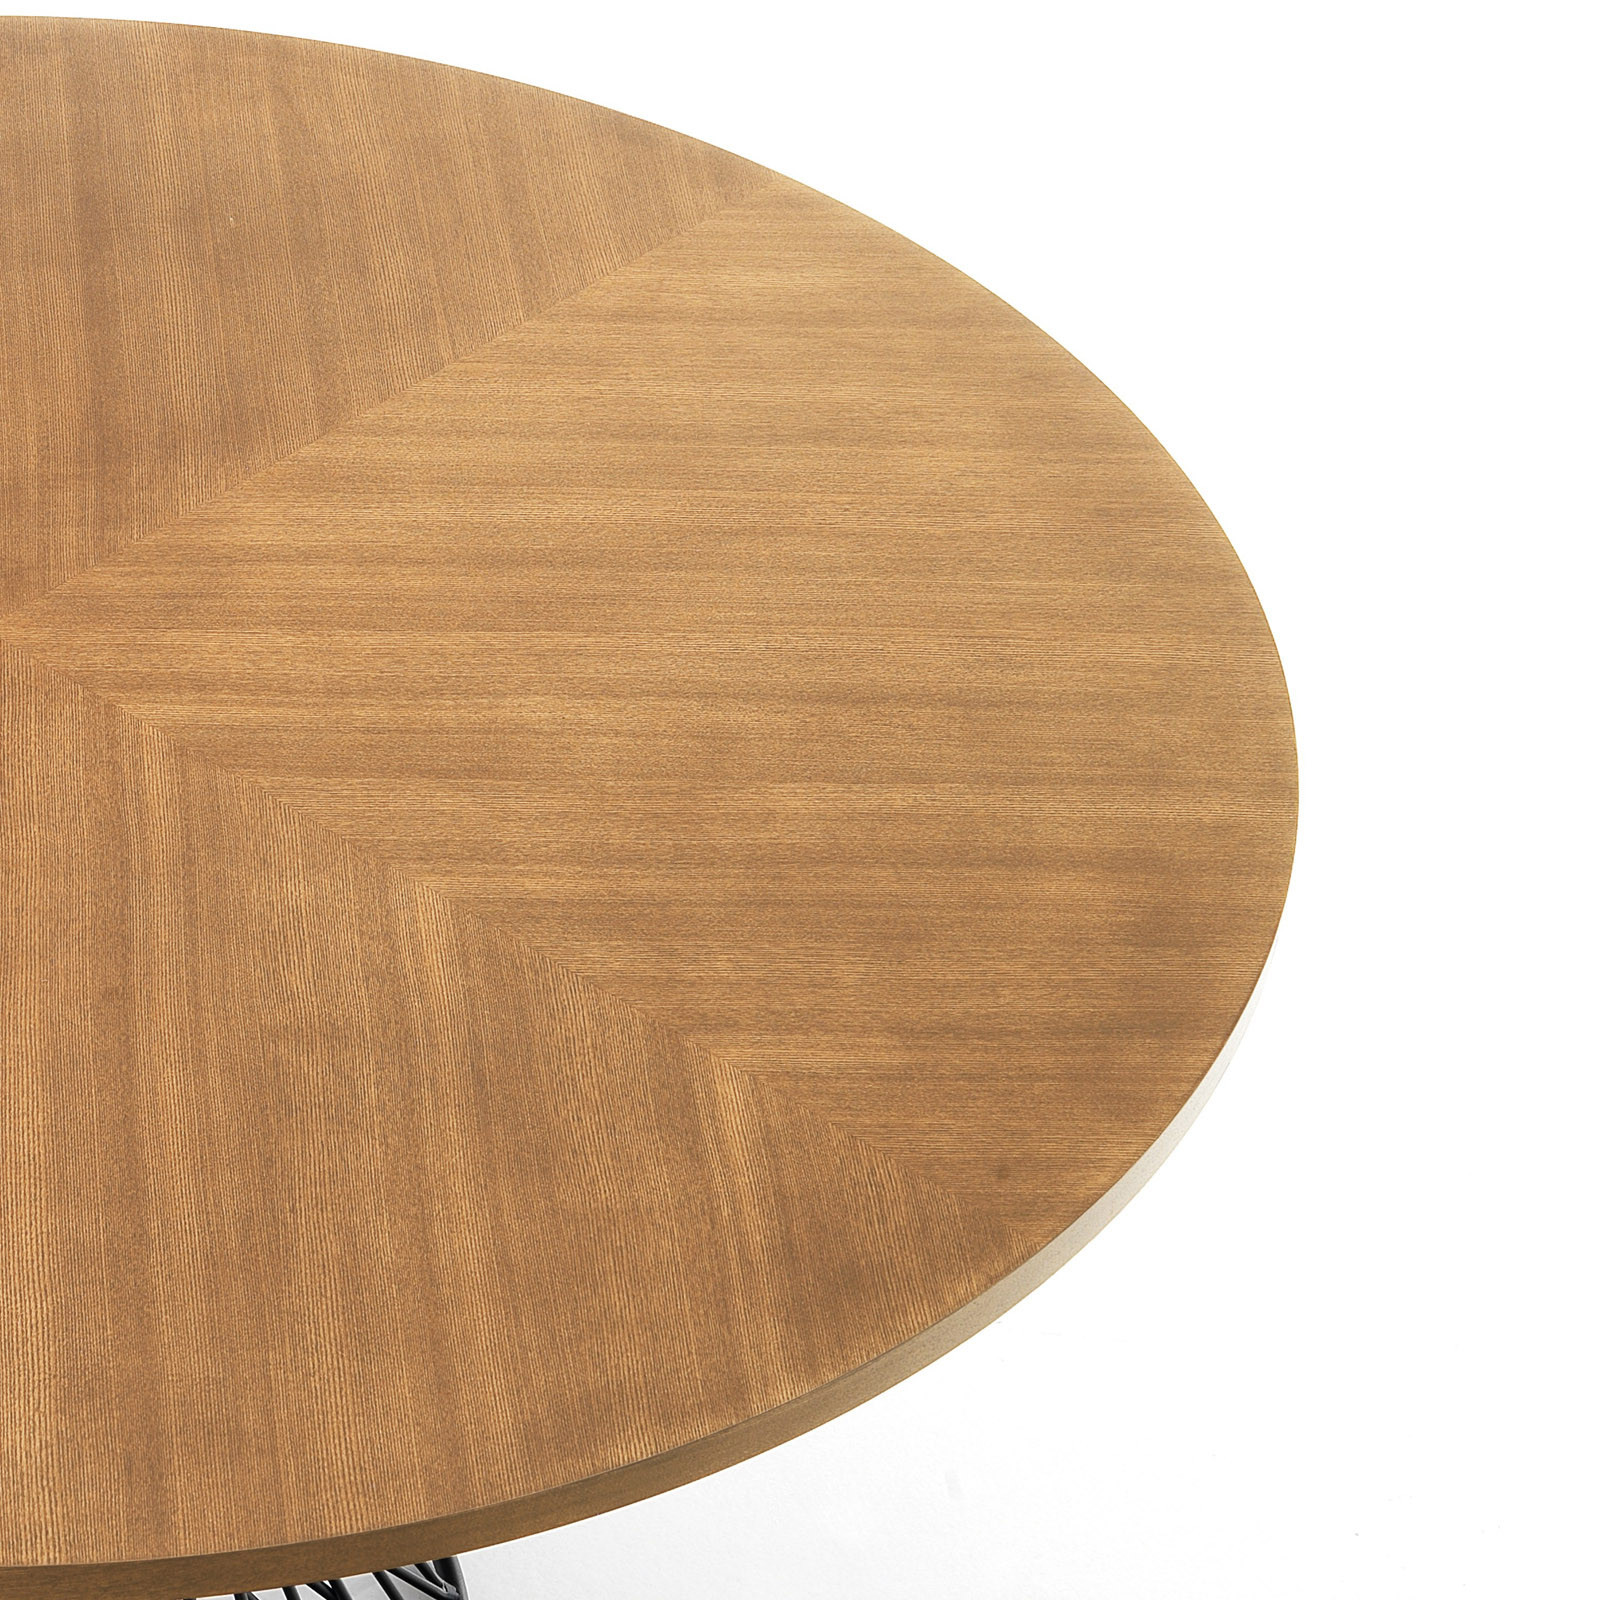 Tavolo Rotondo in legno Caleb impiallacciato finitura Rovere e Base in metallo Nero opaco, diametro 137 cm